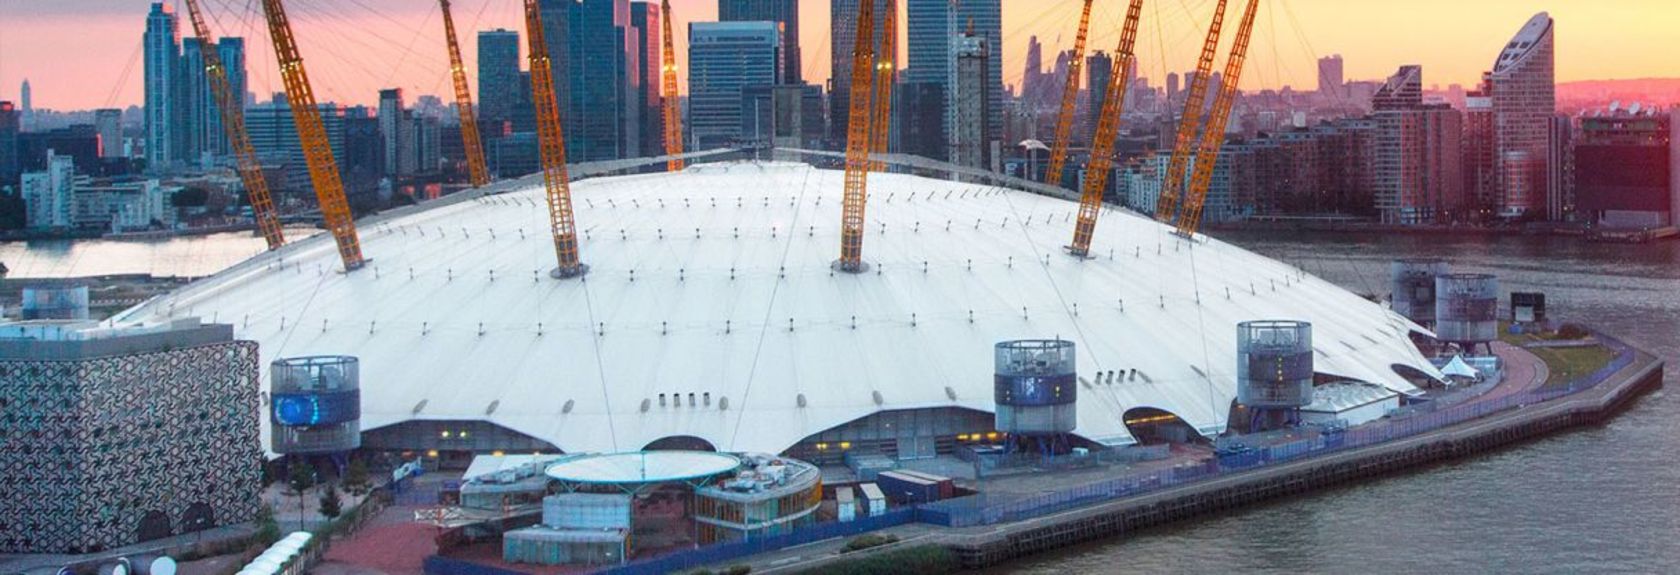 Um dos edifícios mais marcantes de Londres é sem dúvida The O2, mais conhecido como The O2 Arena